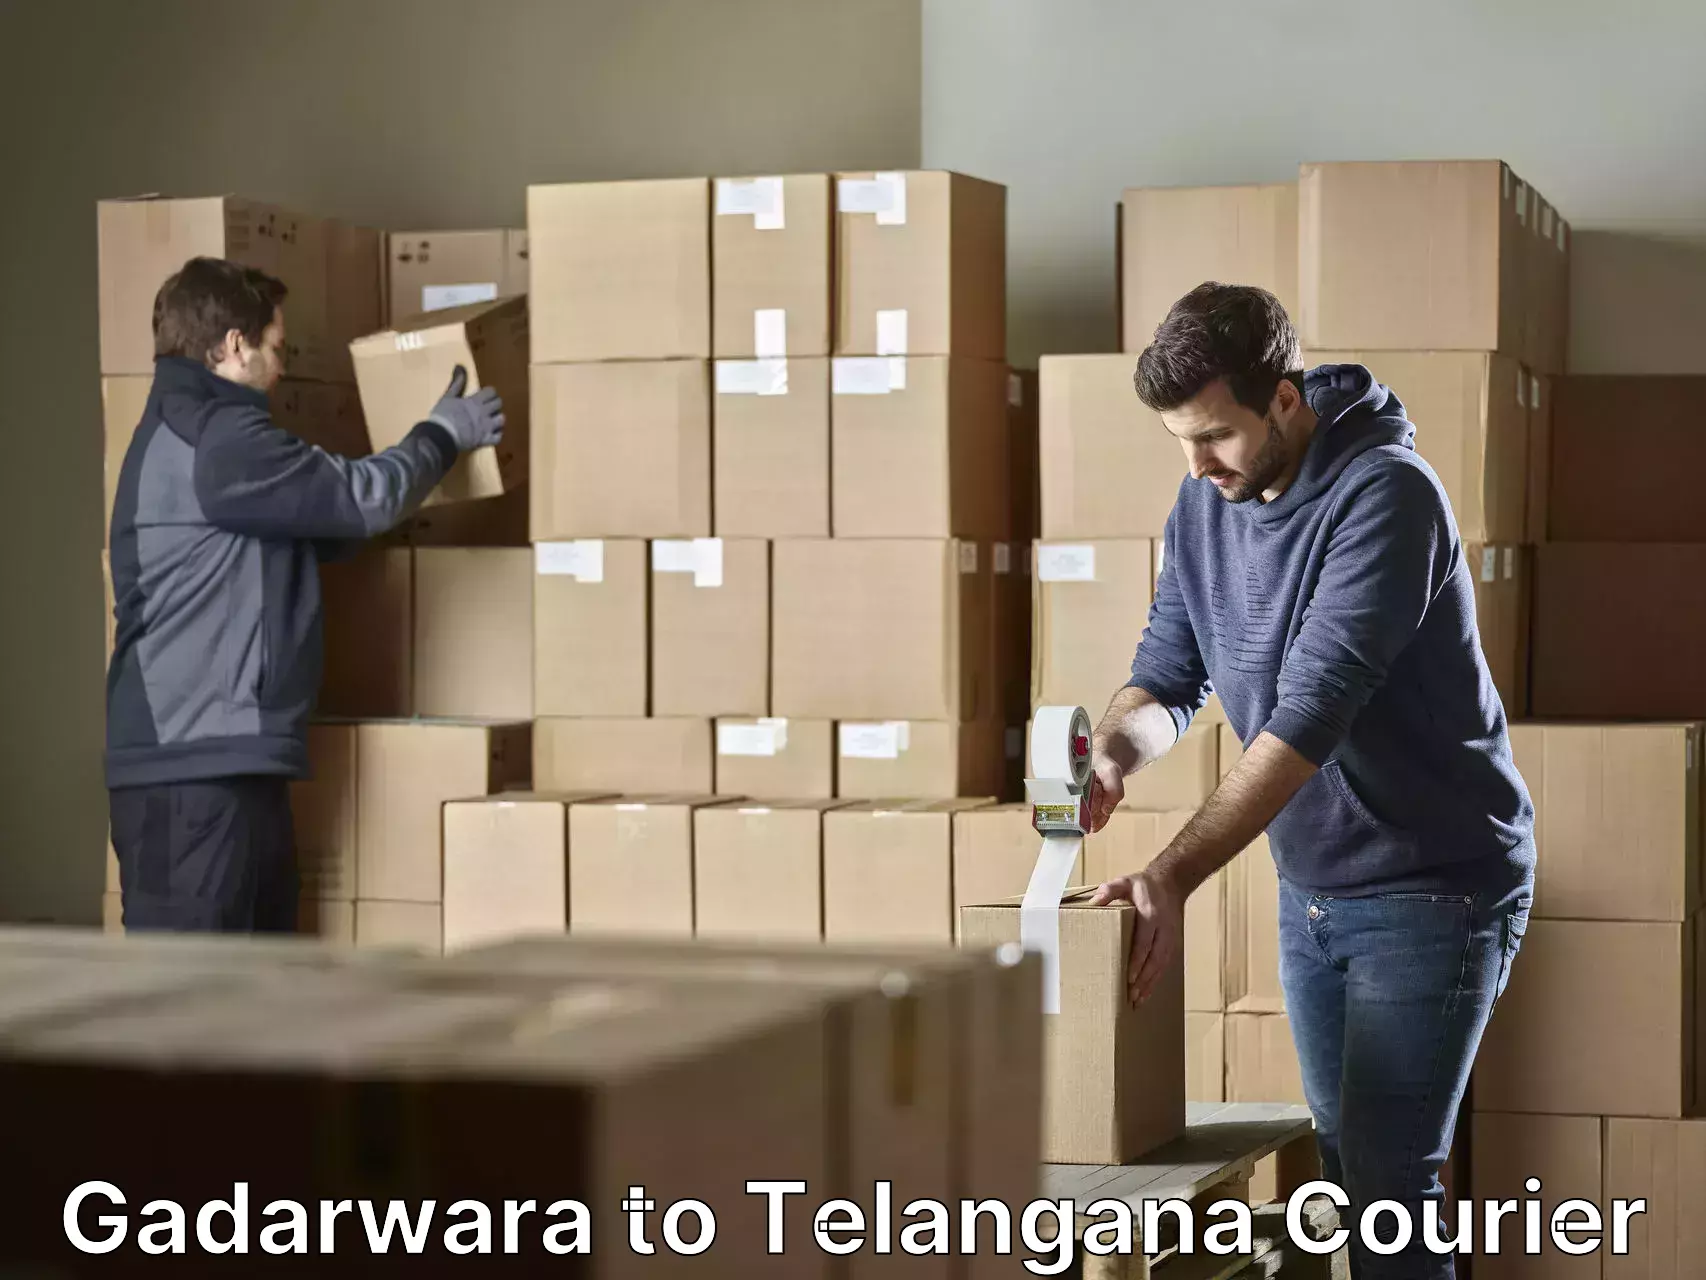 Furniture delivery service Gadarwara to Jannaram